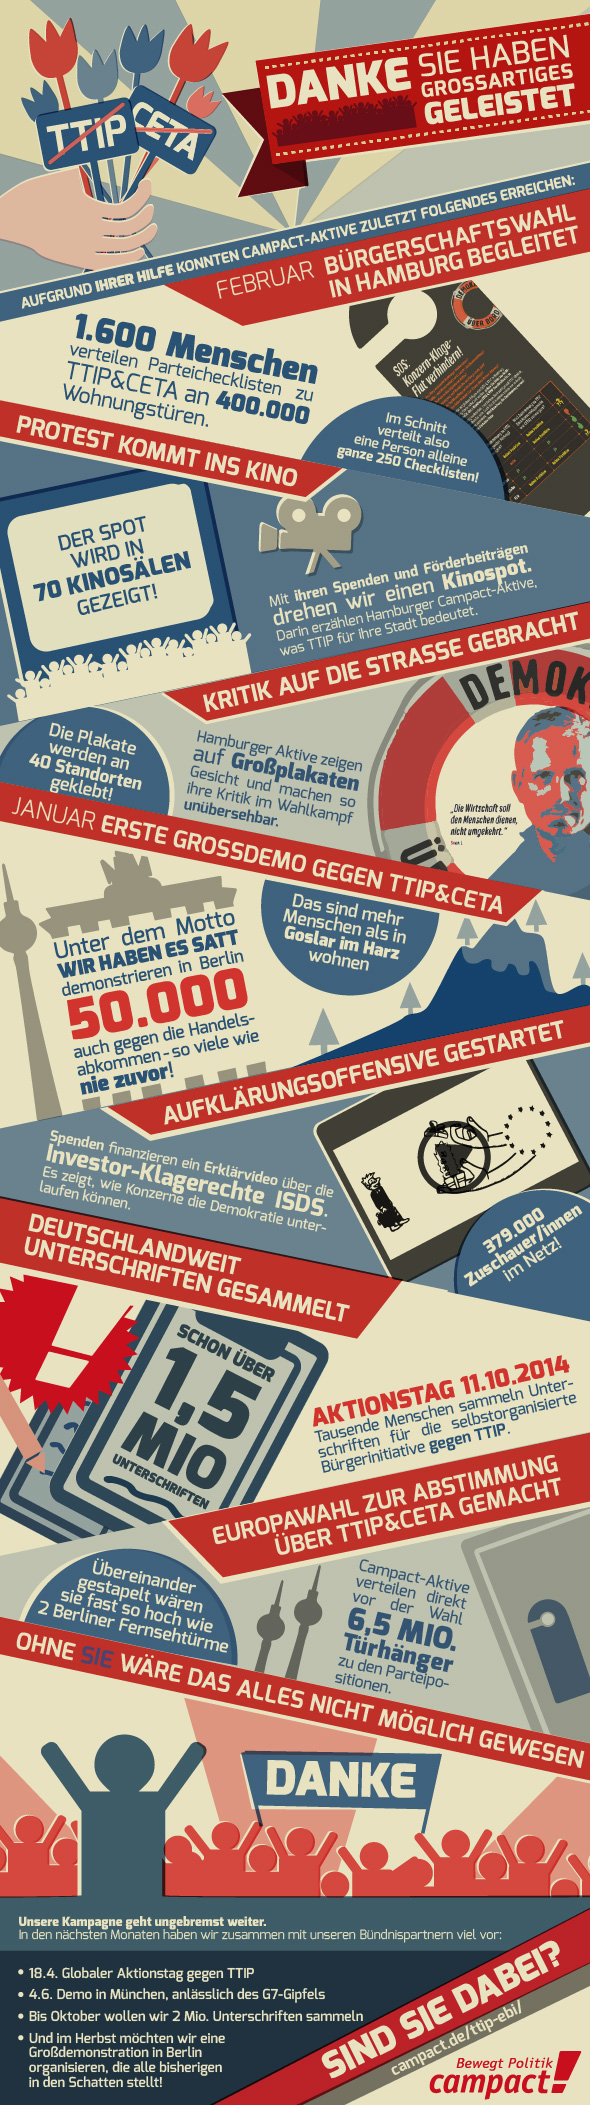 Grafik erklärt die erfolgreiche Kampagne zu TTIP & CETA. Kreation: Randi Ramme